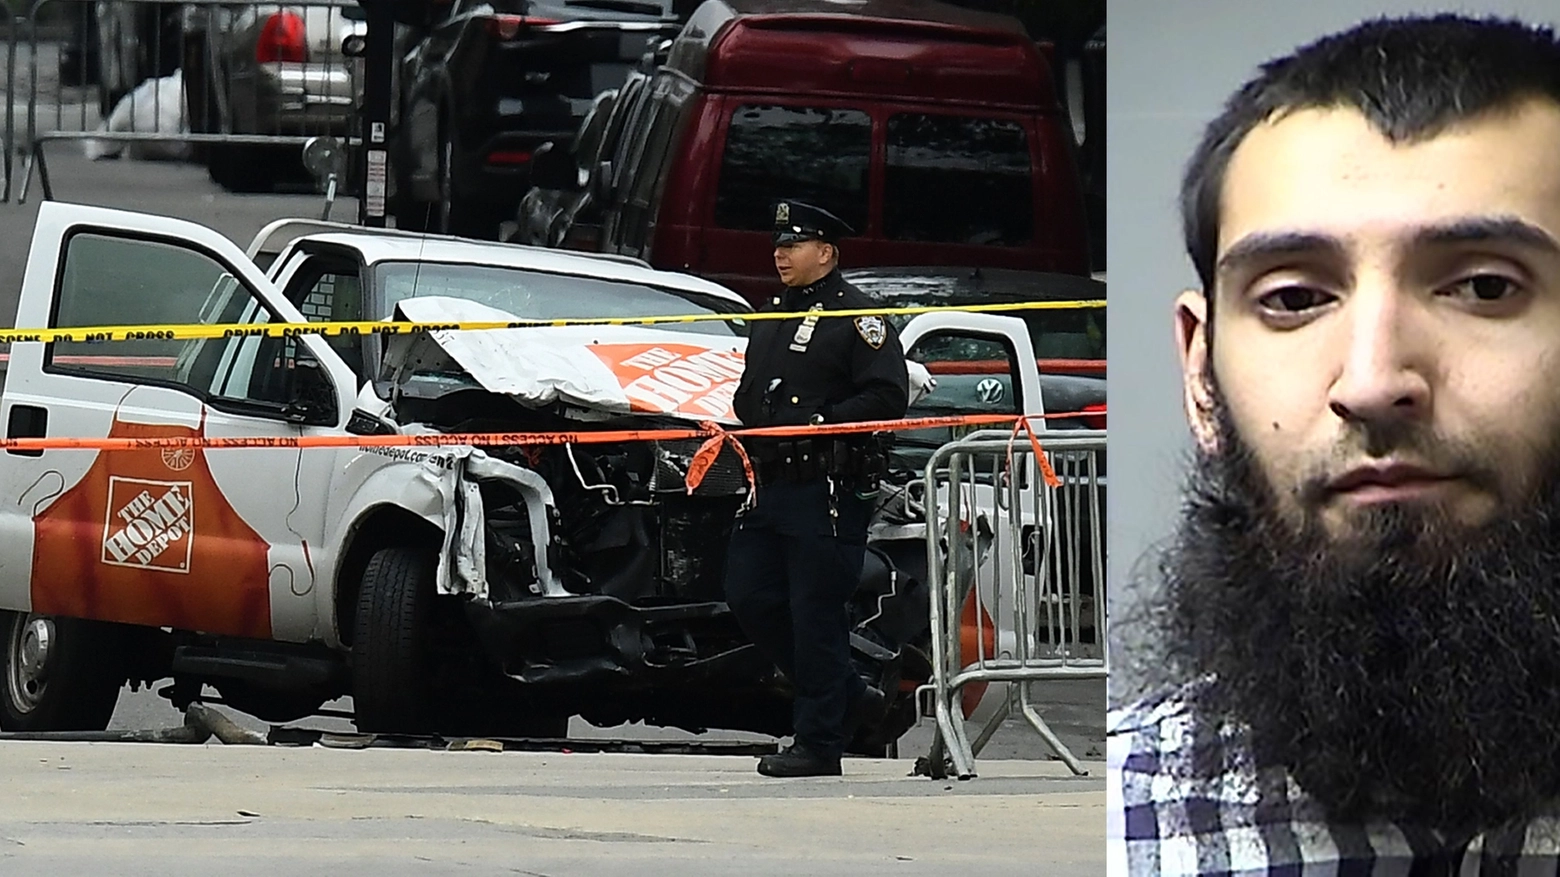 Il pick-up usato per l'attentato e il terrorista Saipov Sayfullo (afp)